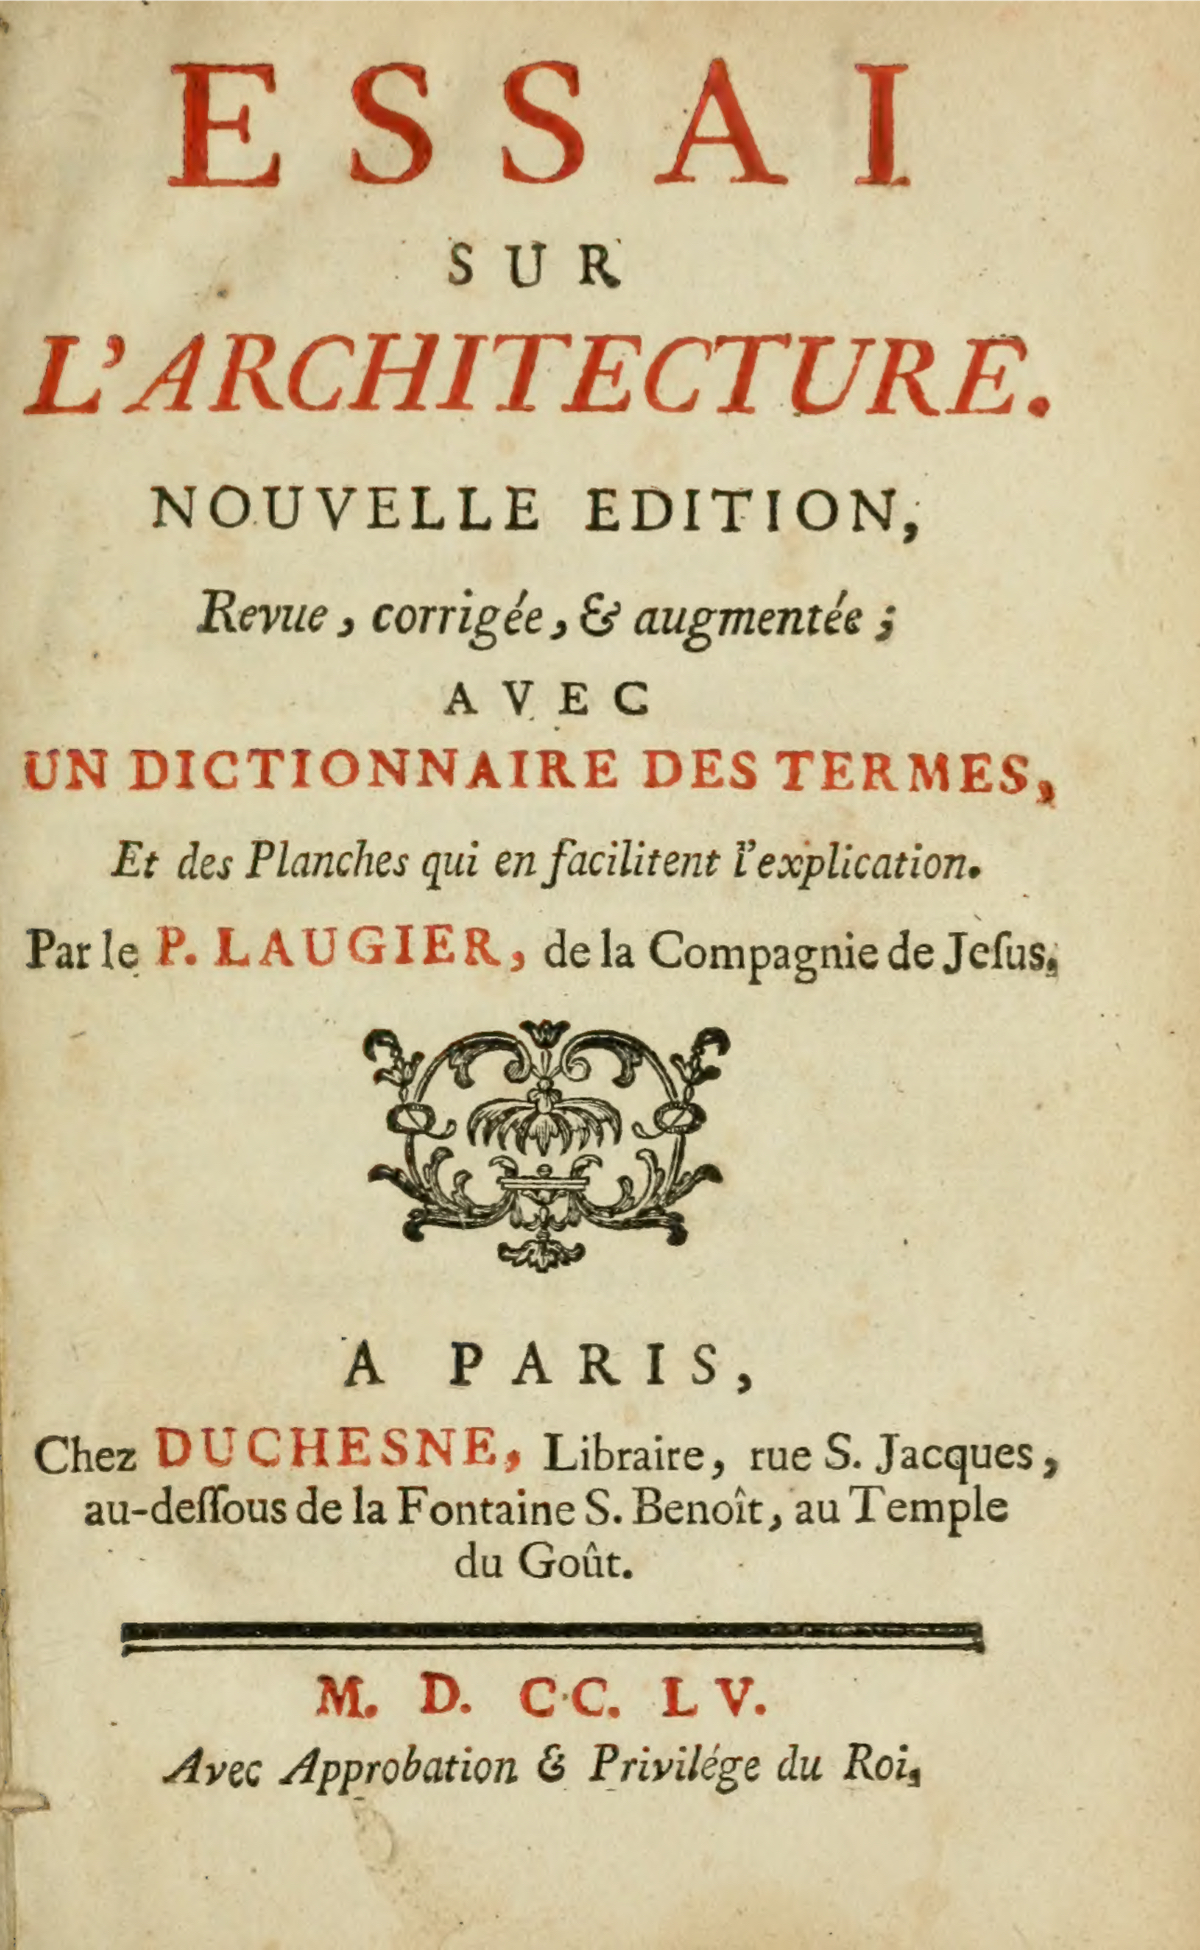 Marc-Antoine Laugier: Essai sur l’Architecture (Paris 1755)